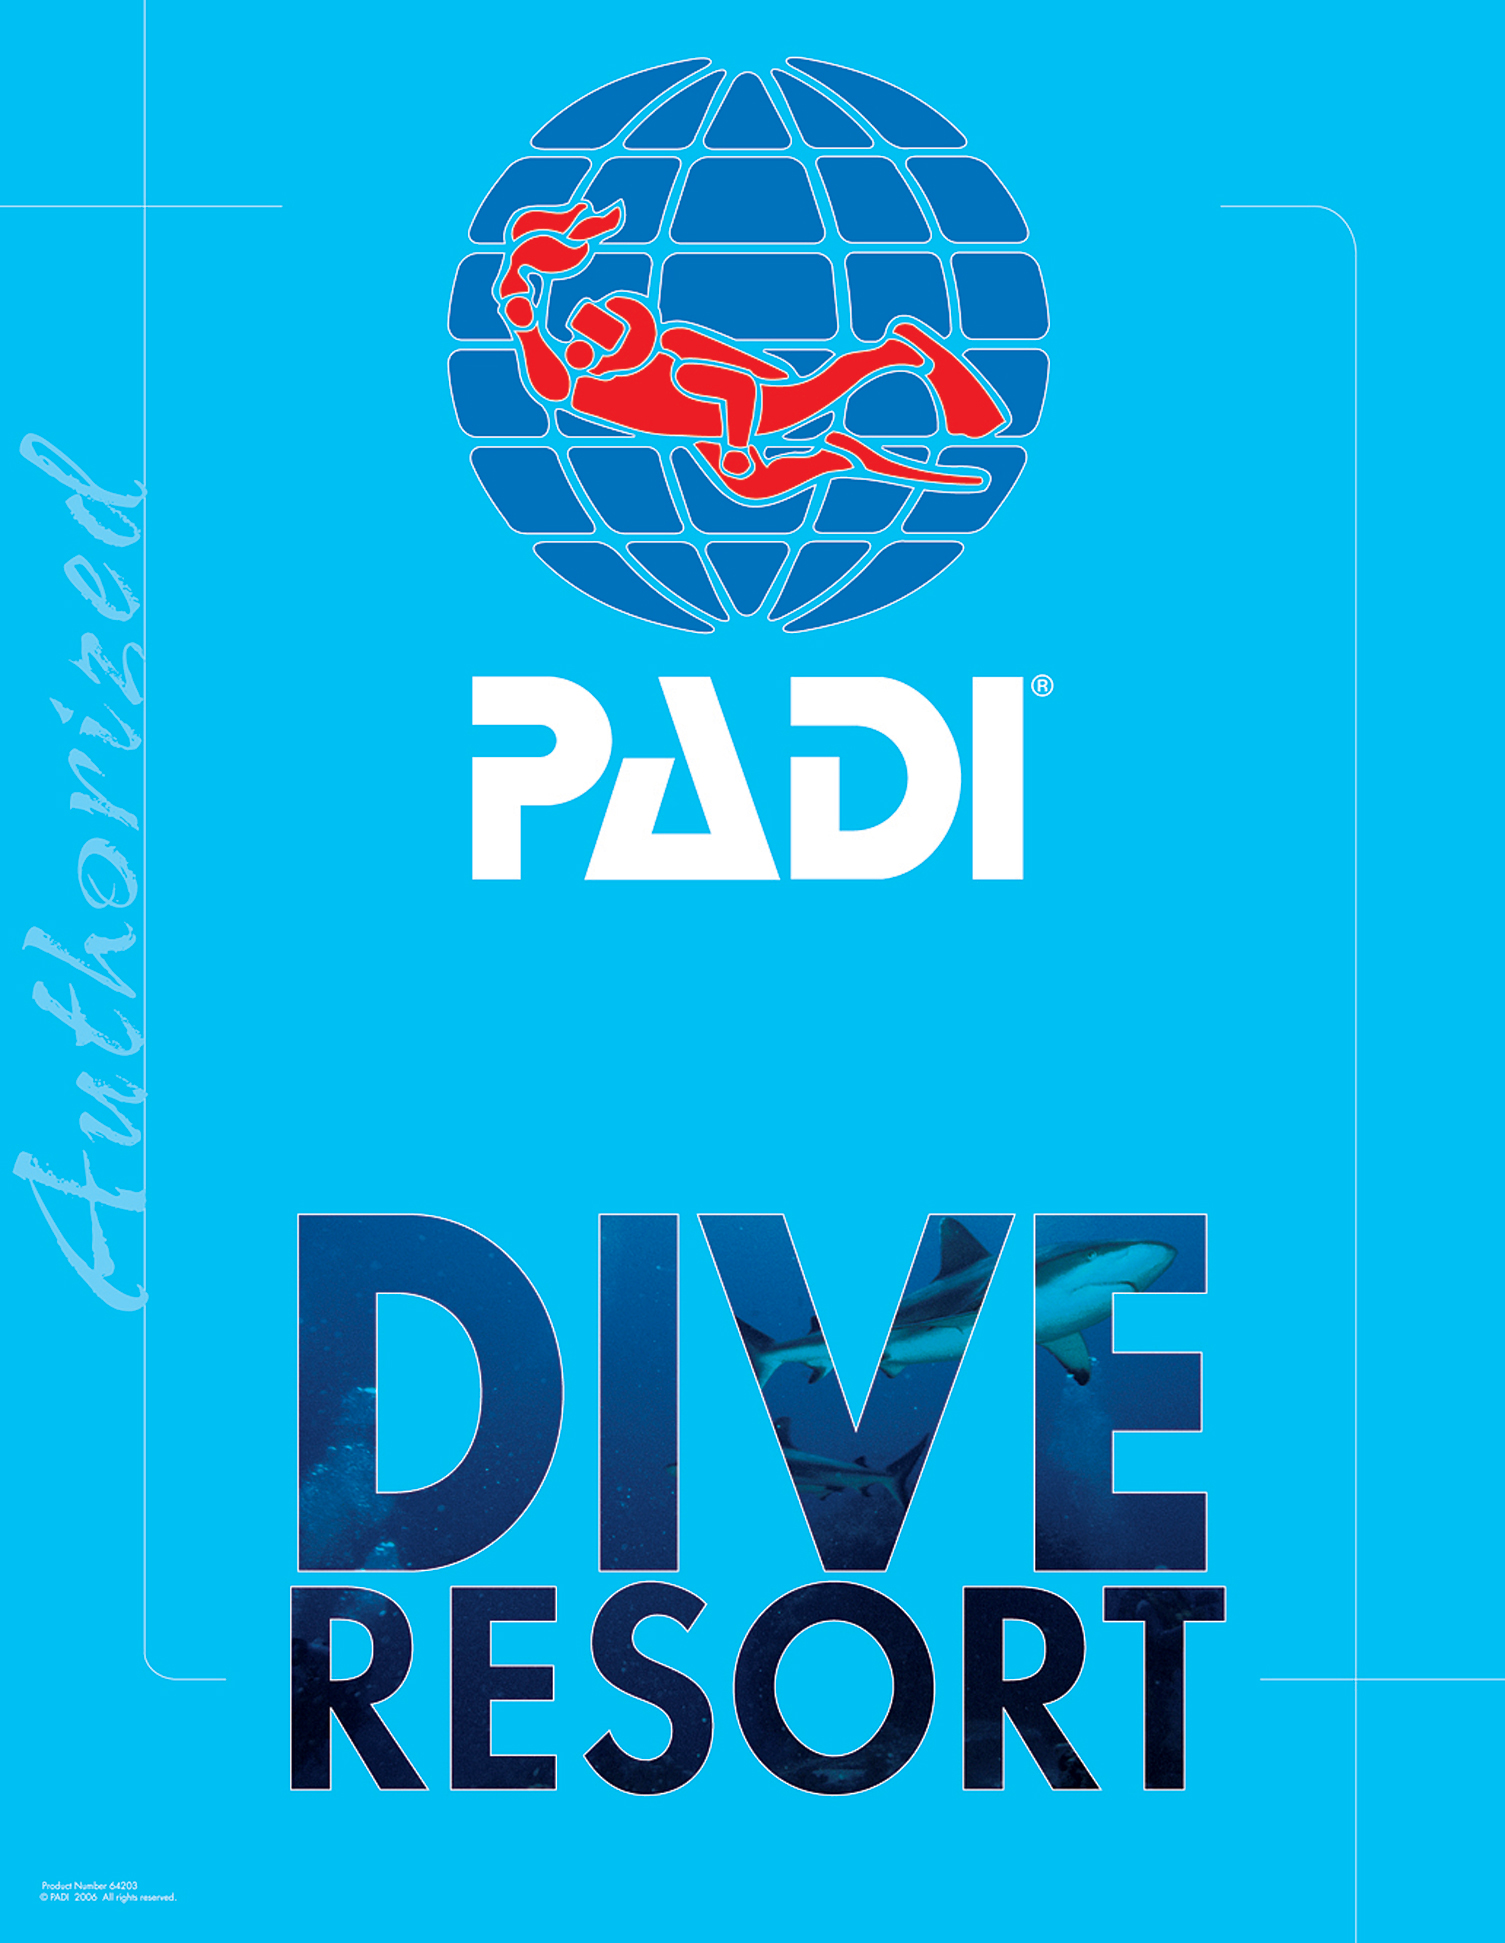 PADI dive resort